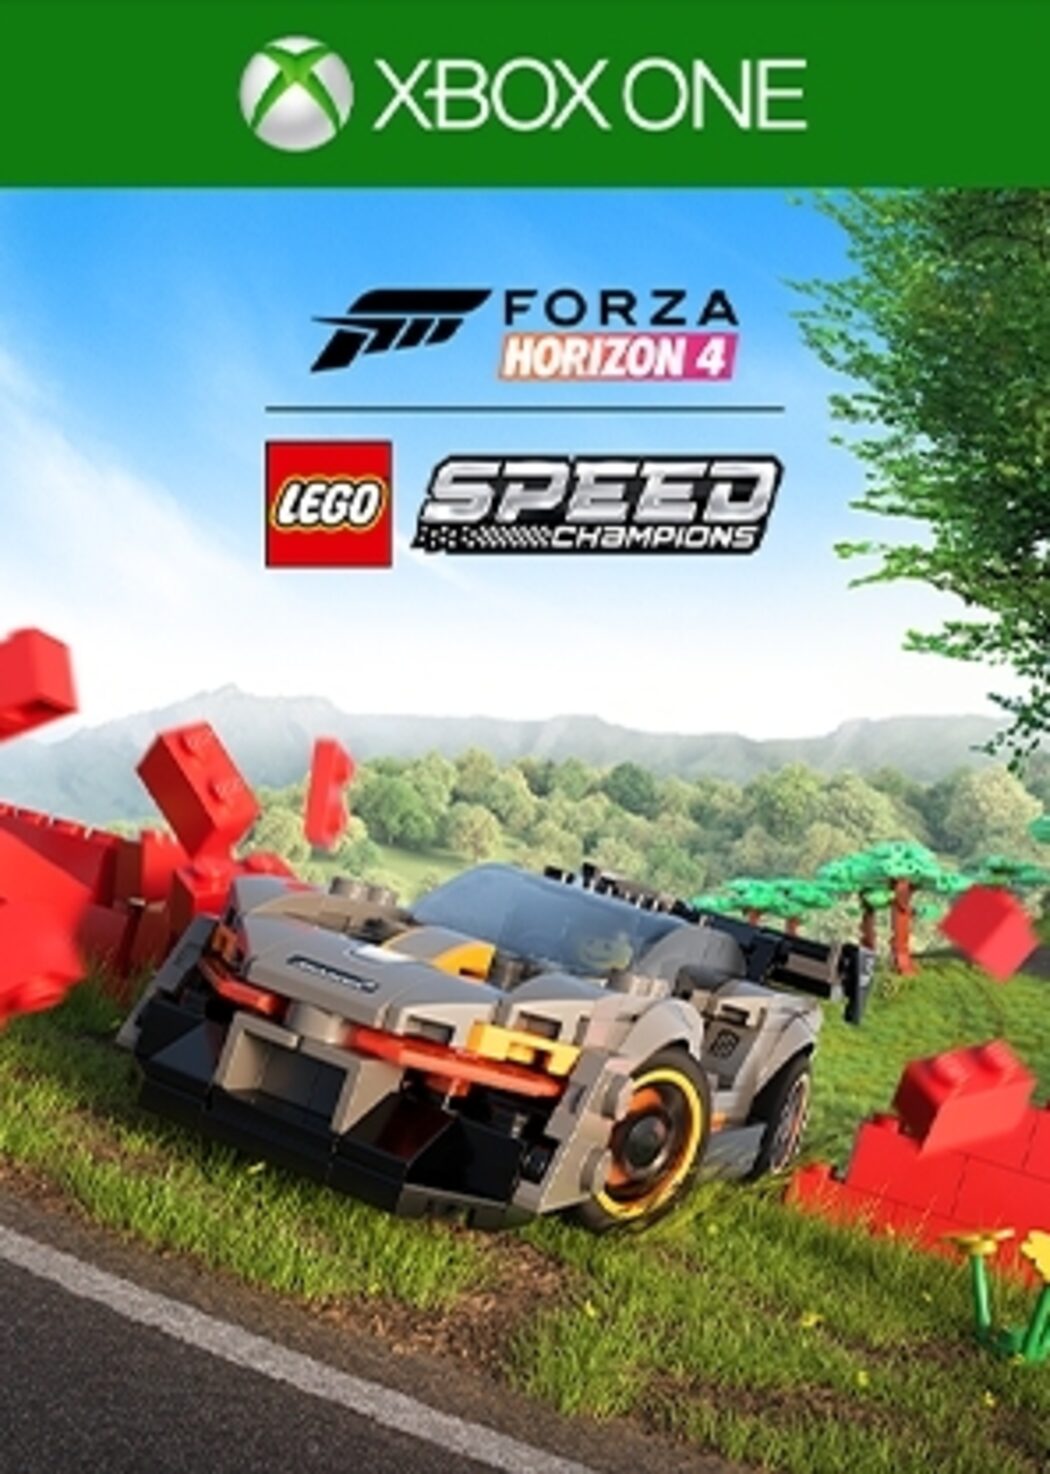 Forza 4 LEGO Champions Xbox Live Key | ENEBA